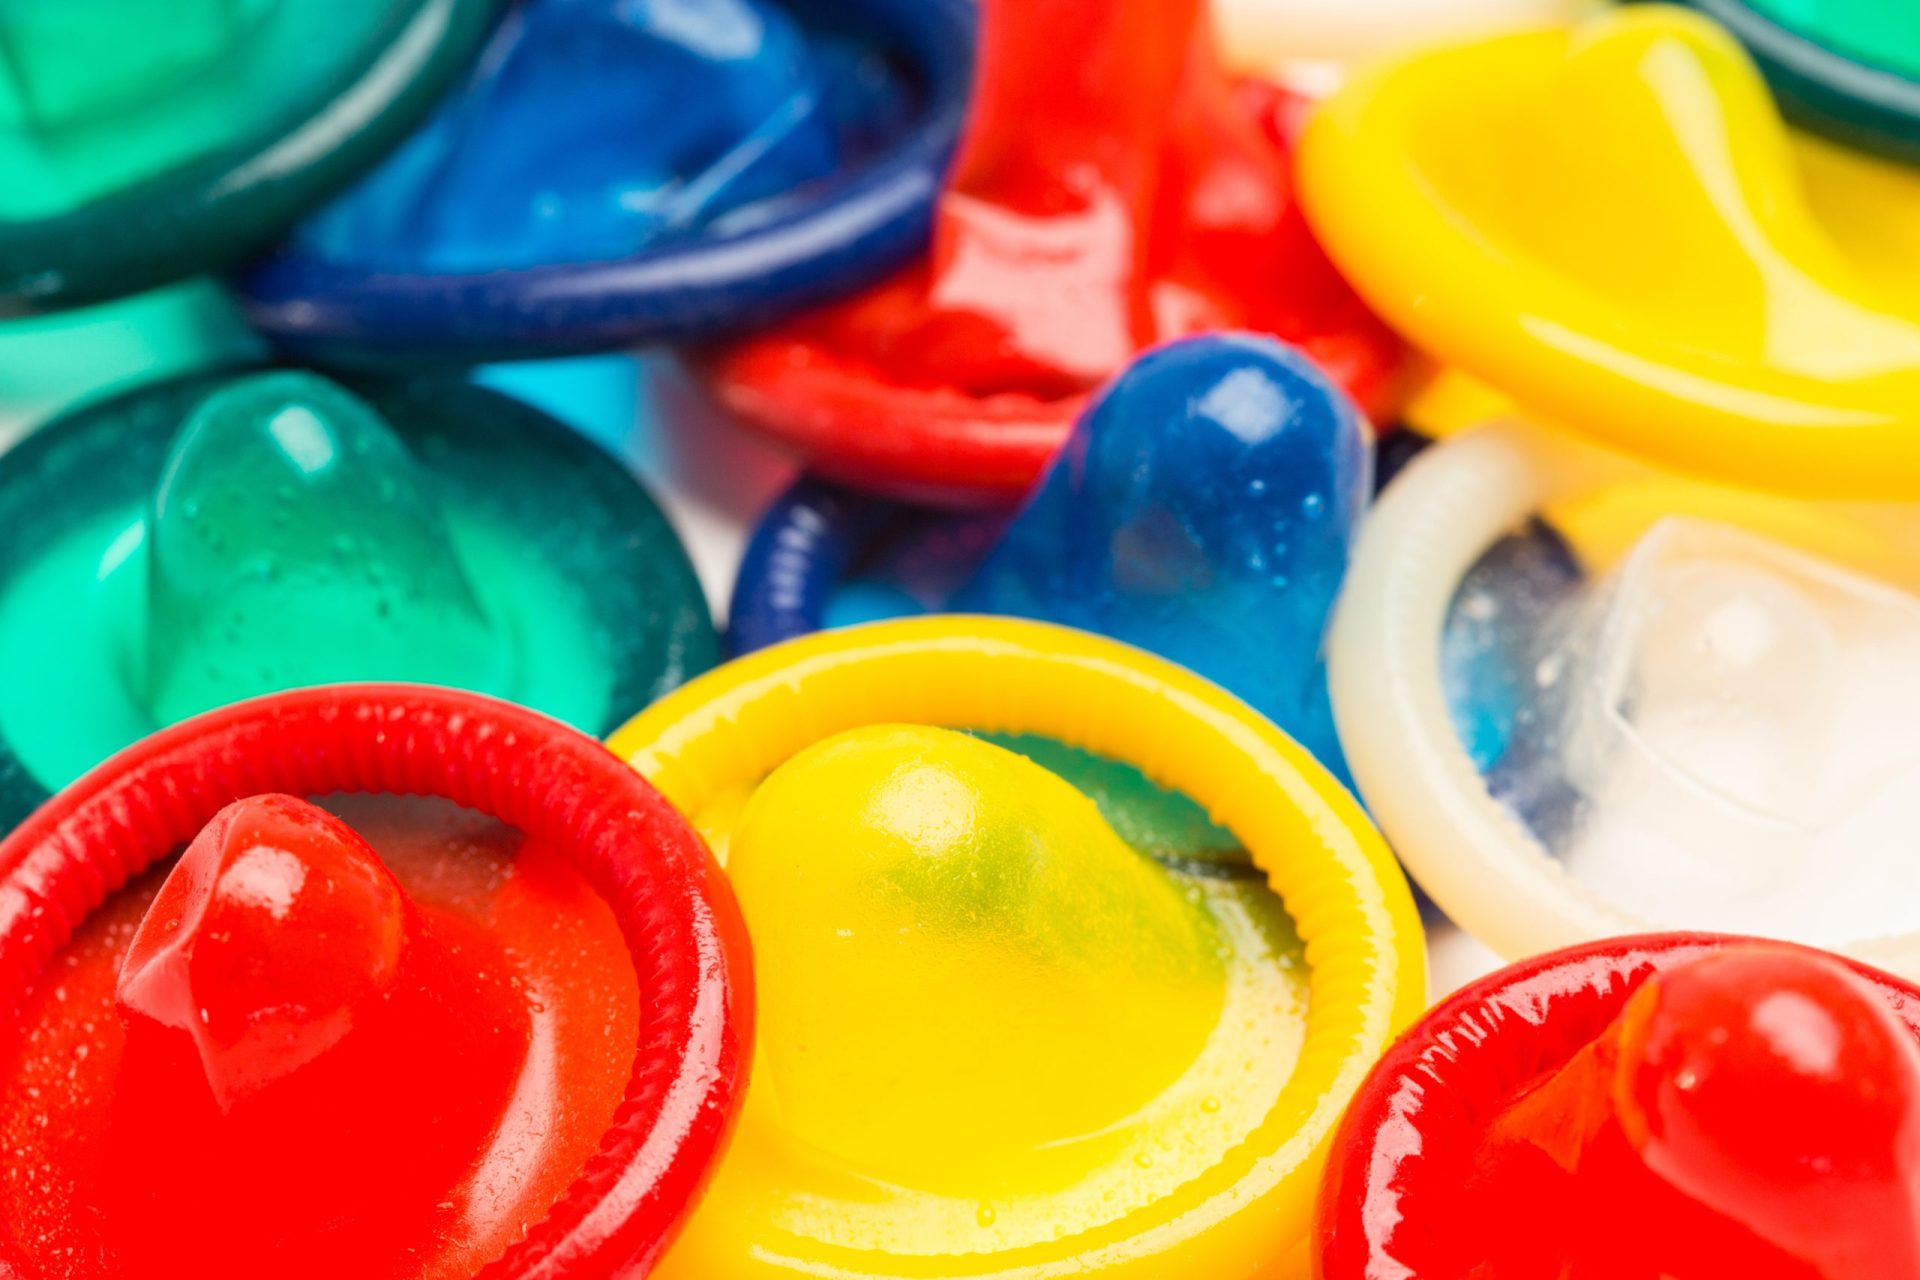 Preservativos contrafeitos não se vendem em Portugal